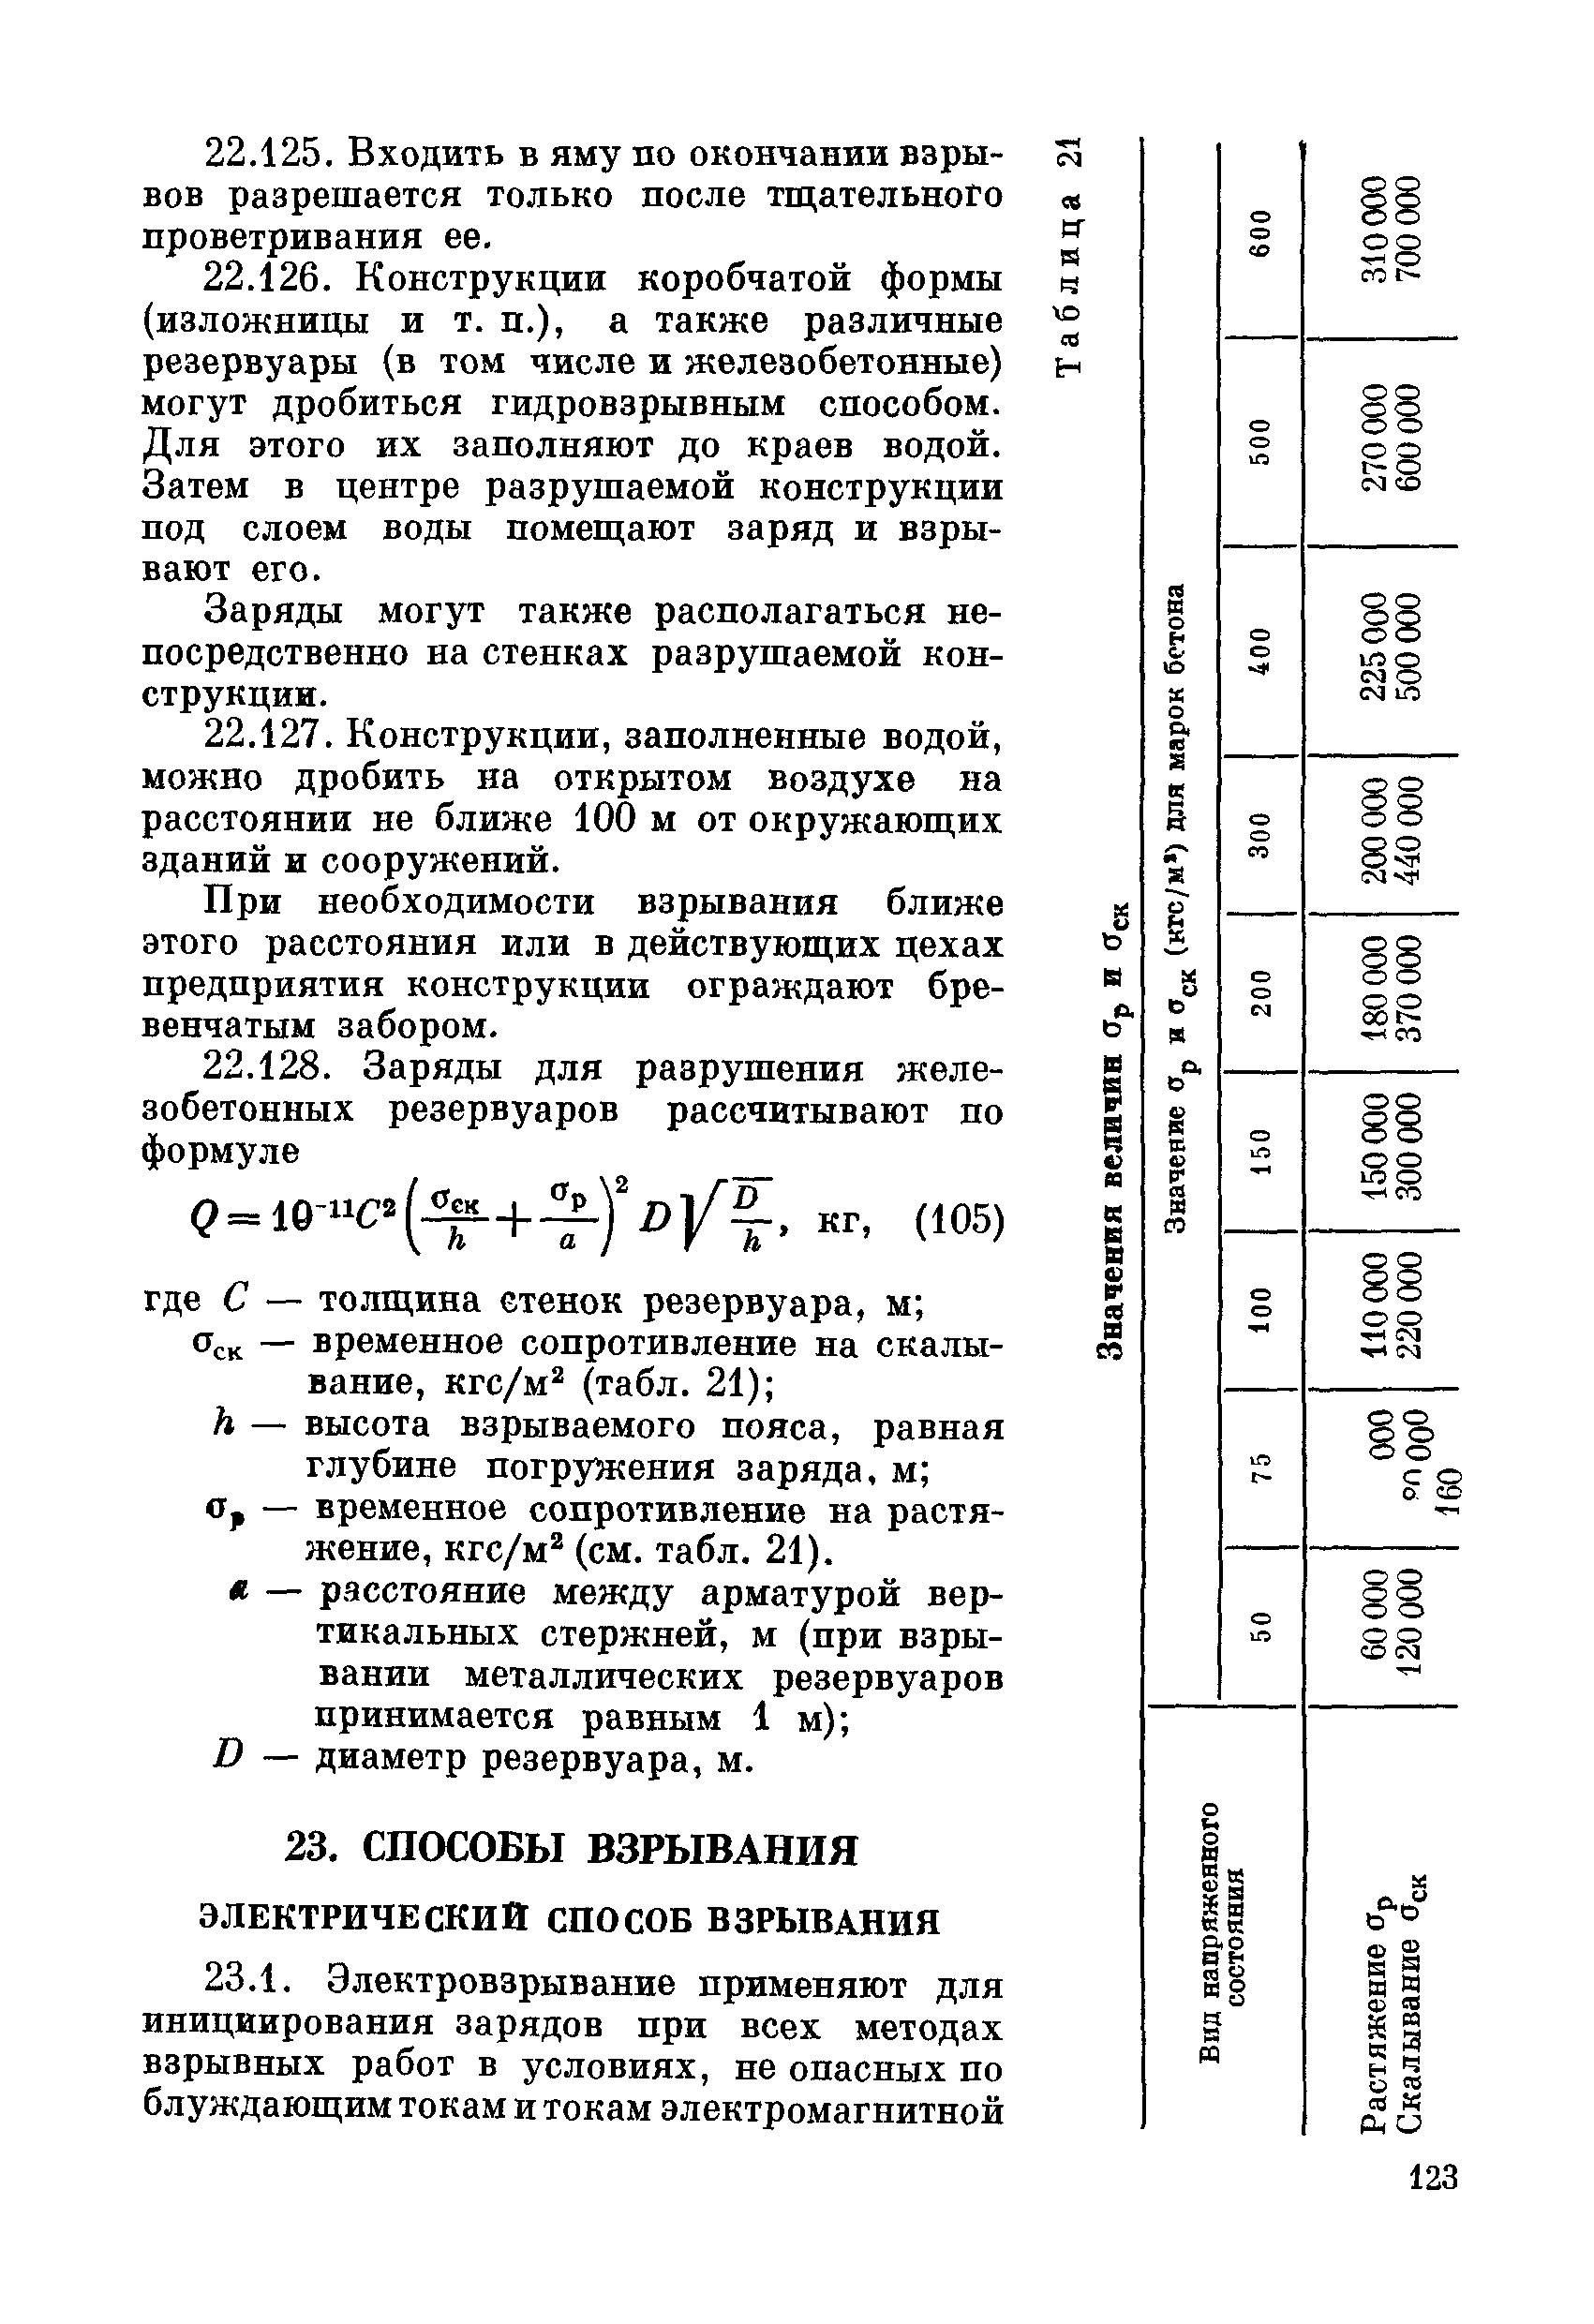 ВСН 281-71/ММСС СССР